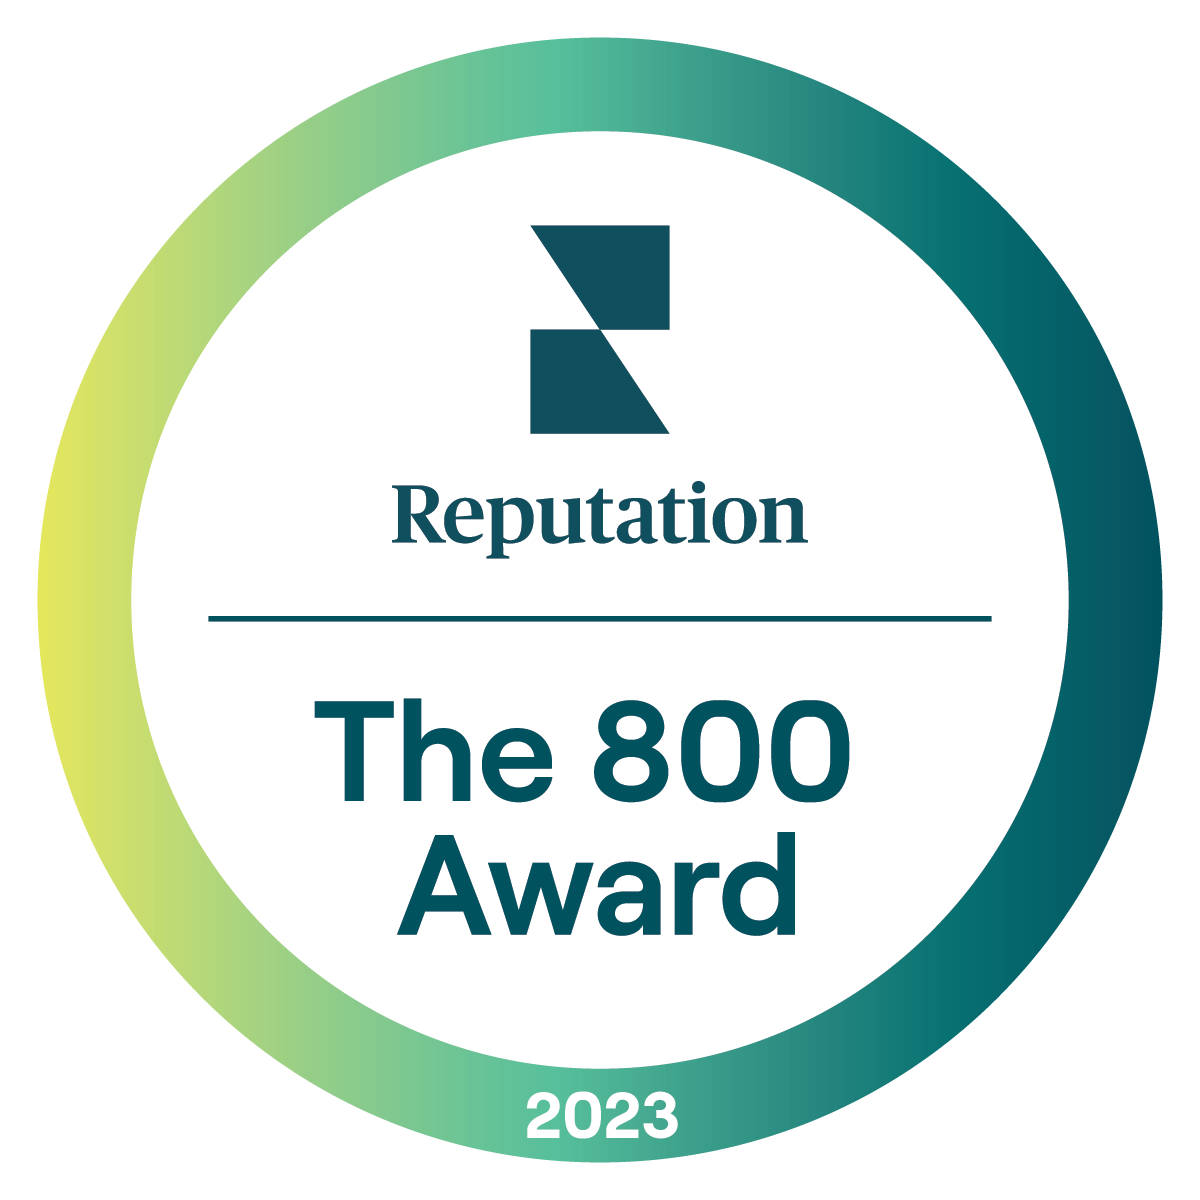 800 award